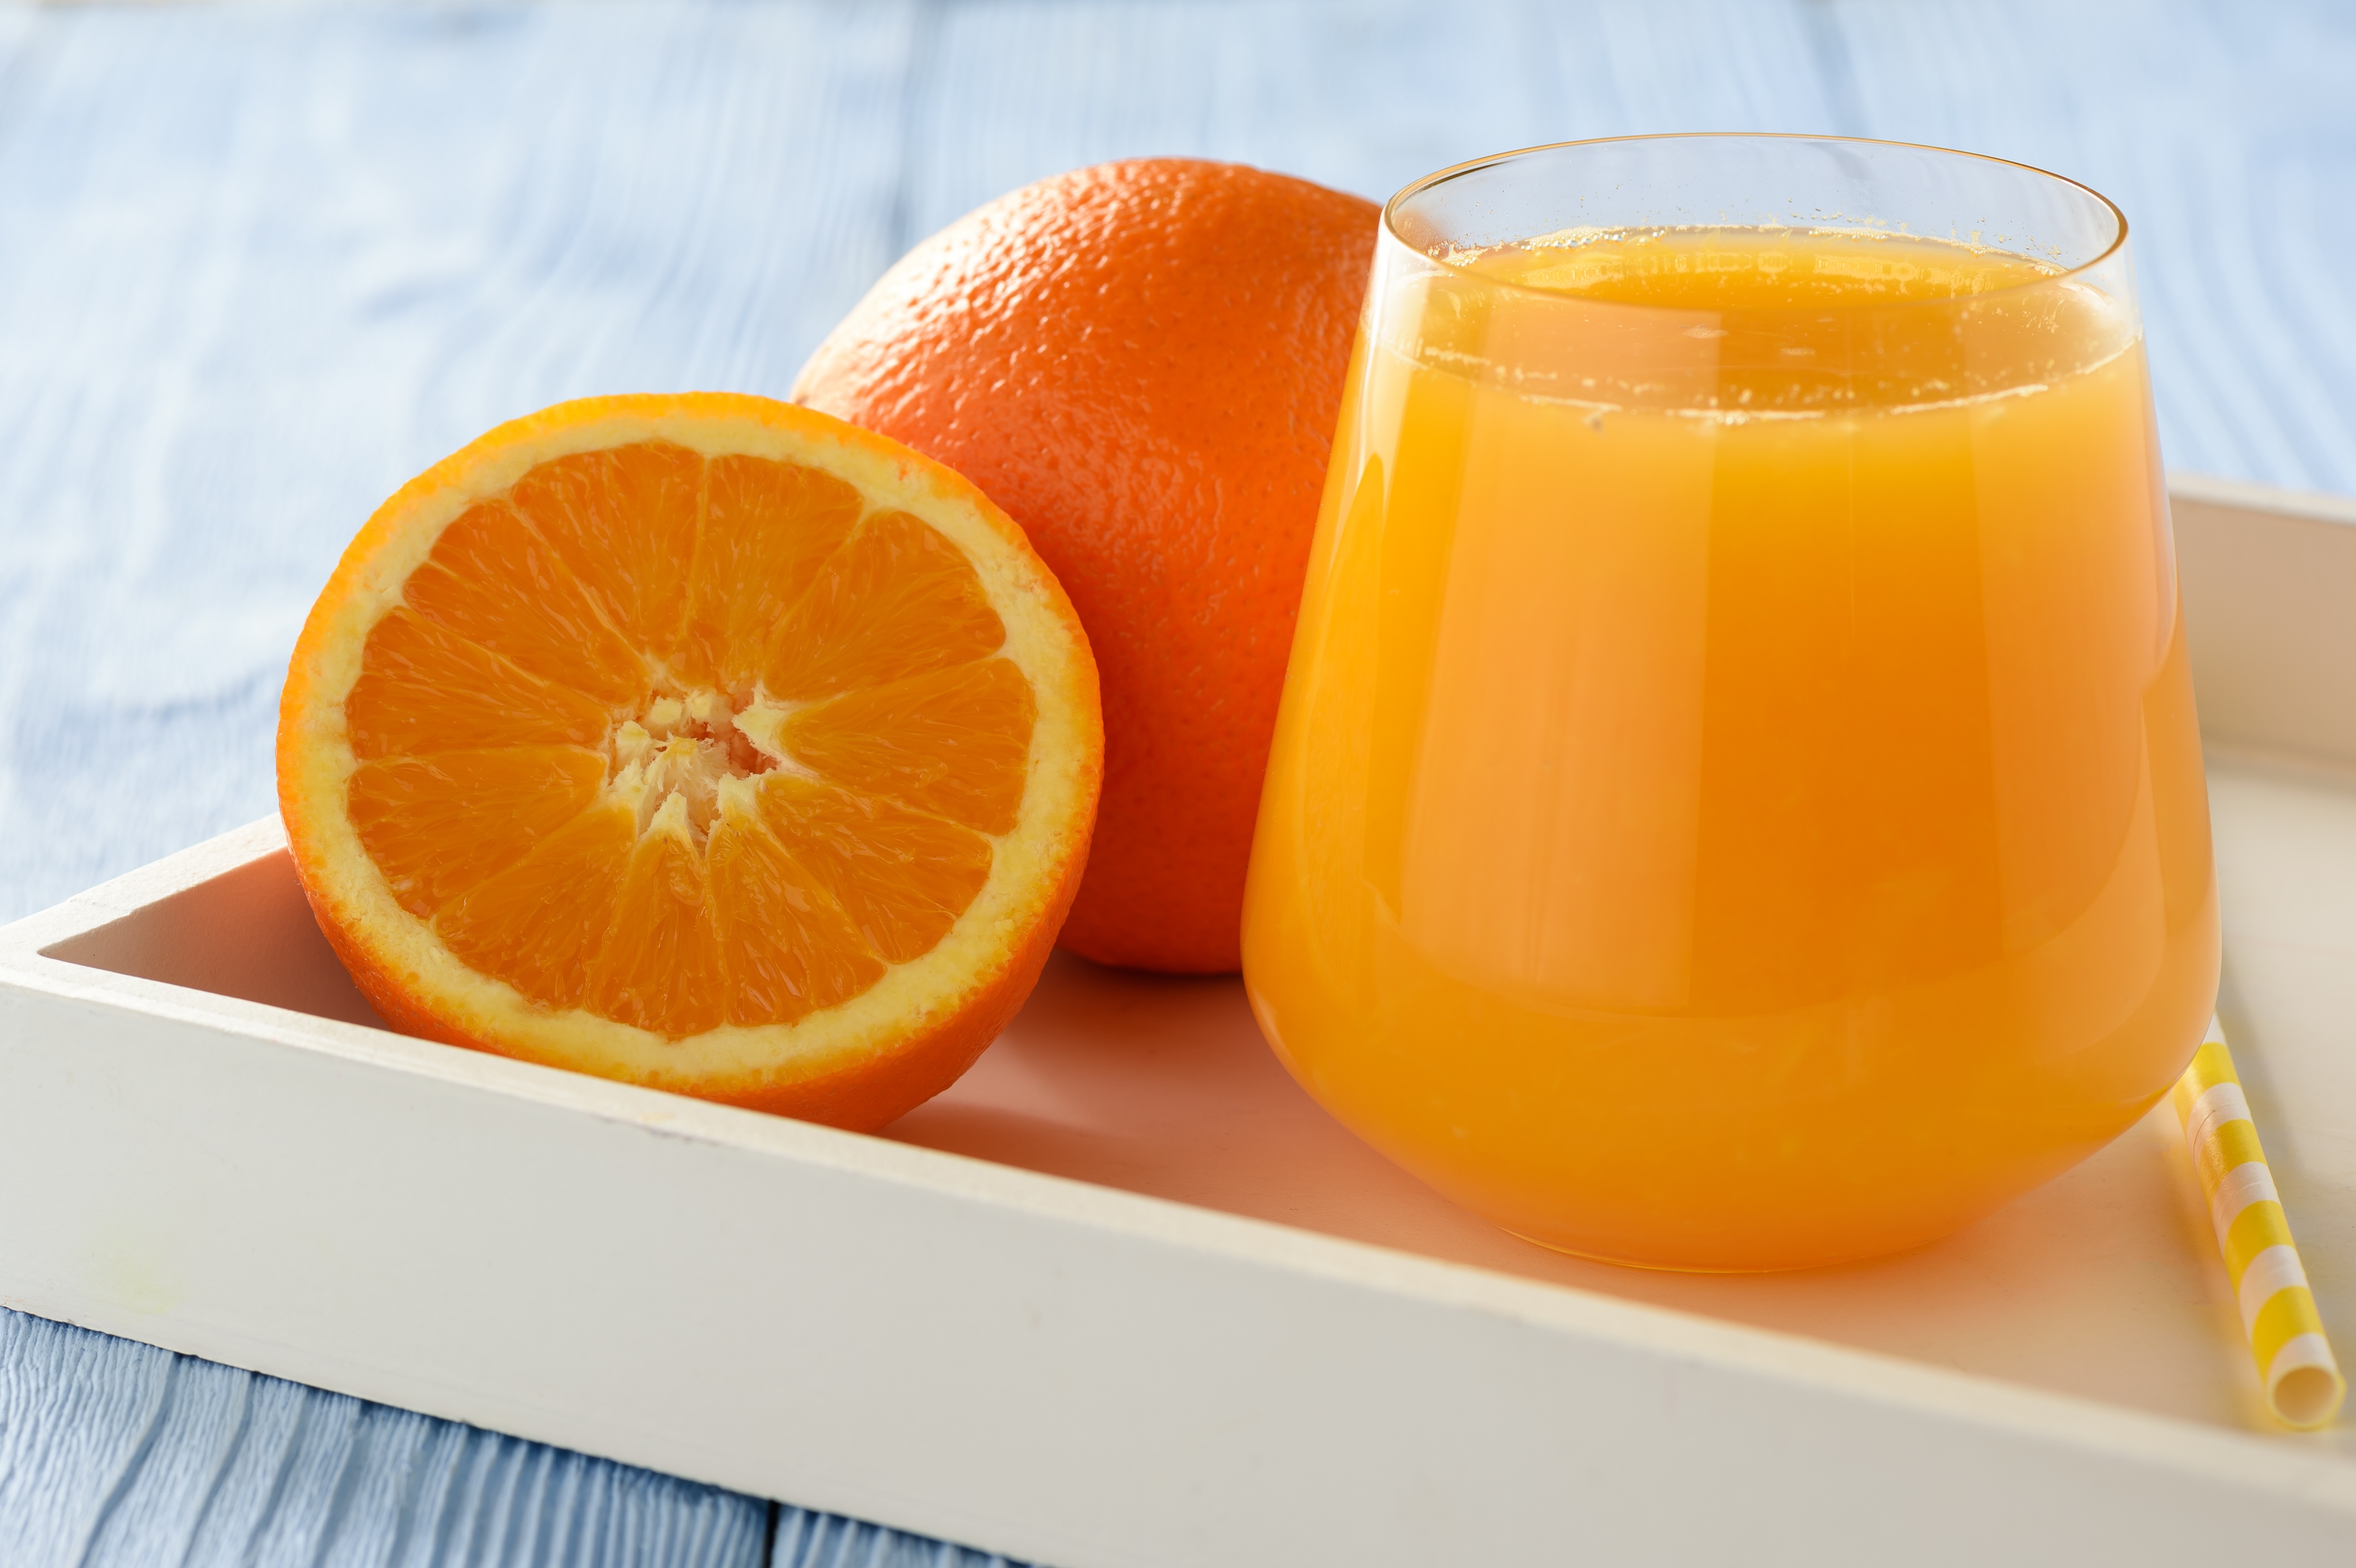 Zumo de naranja natural calorias